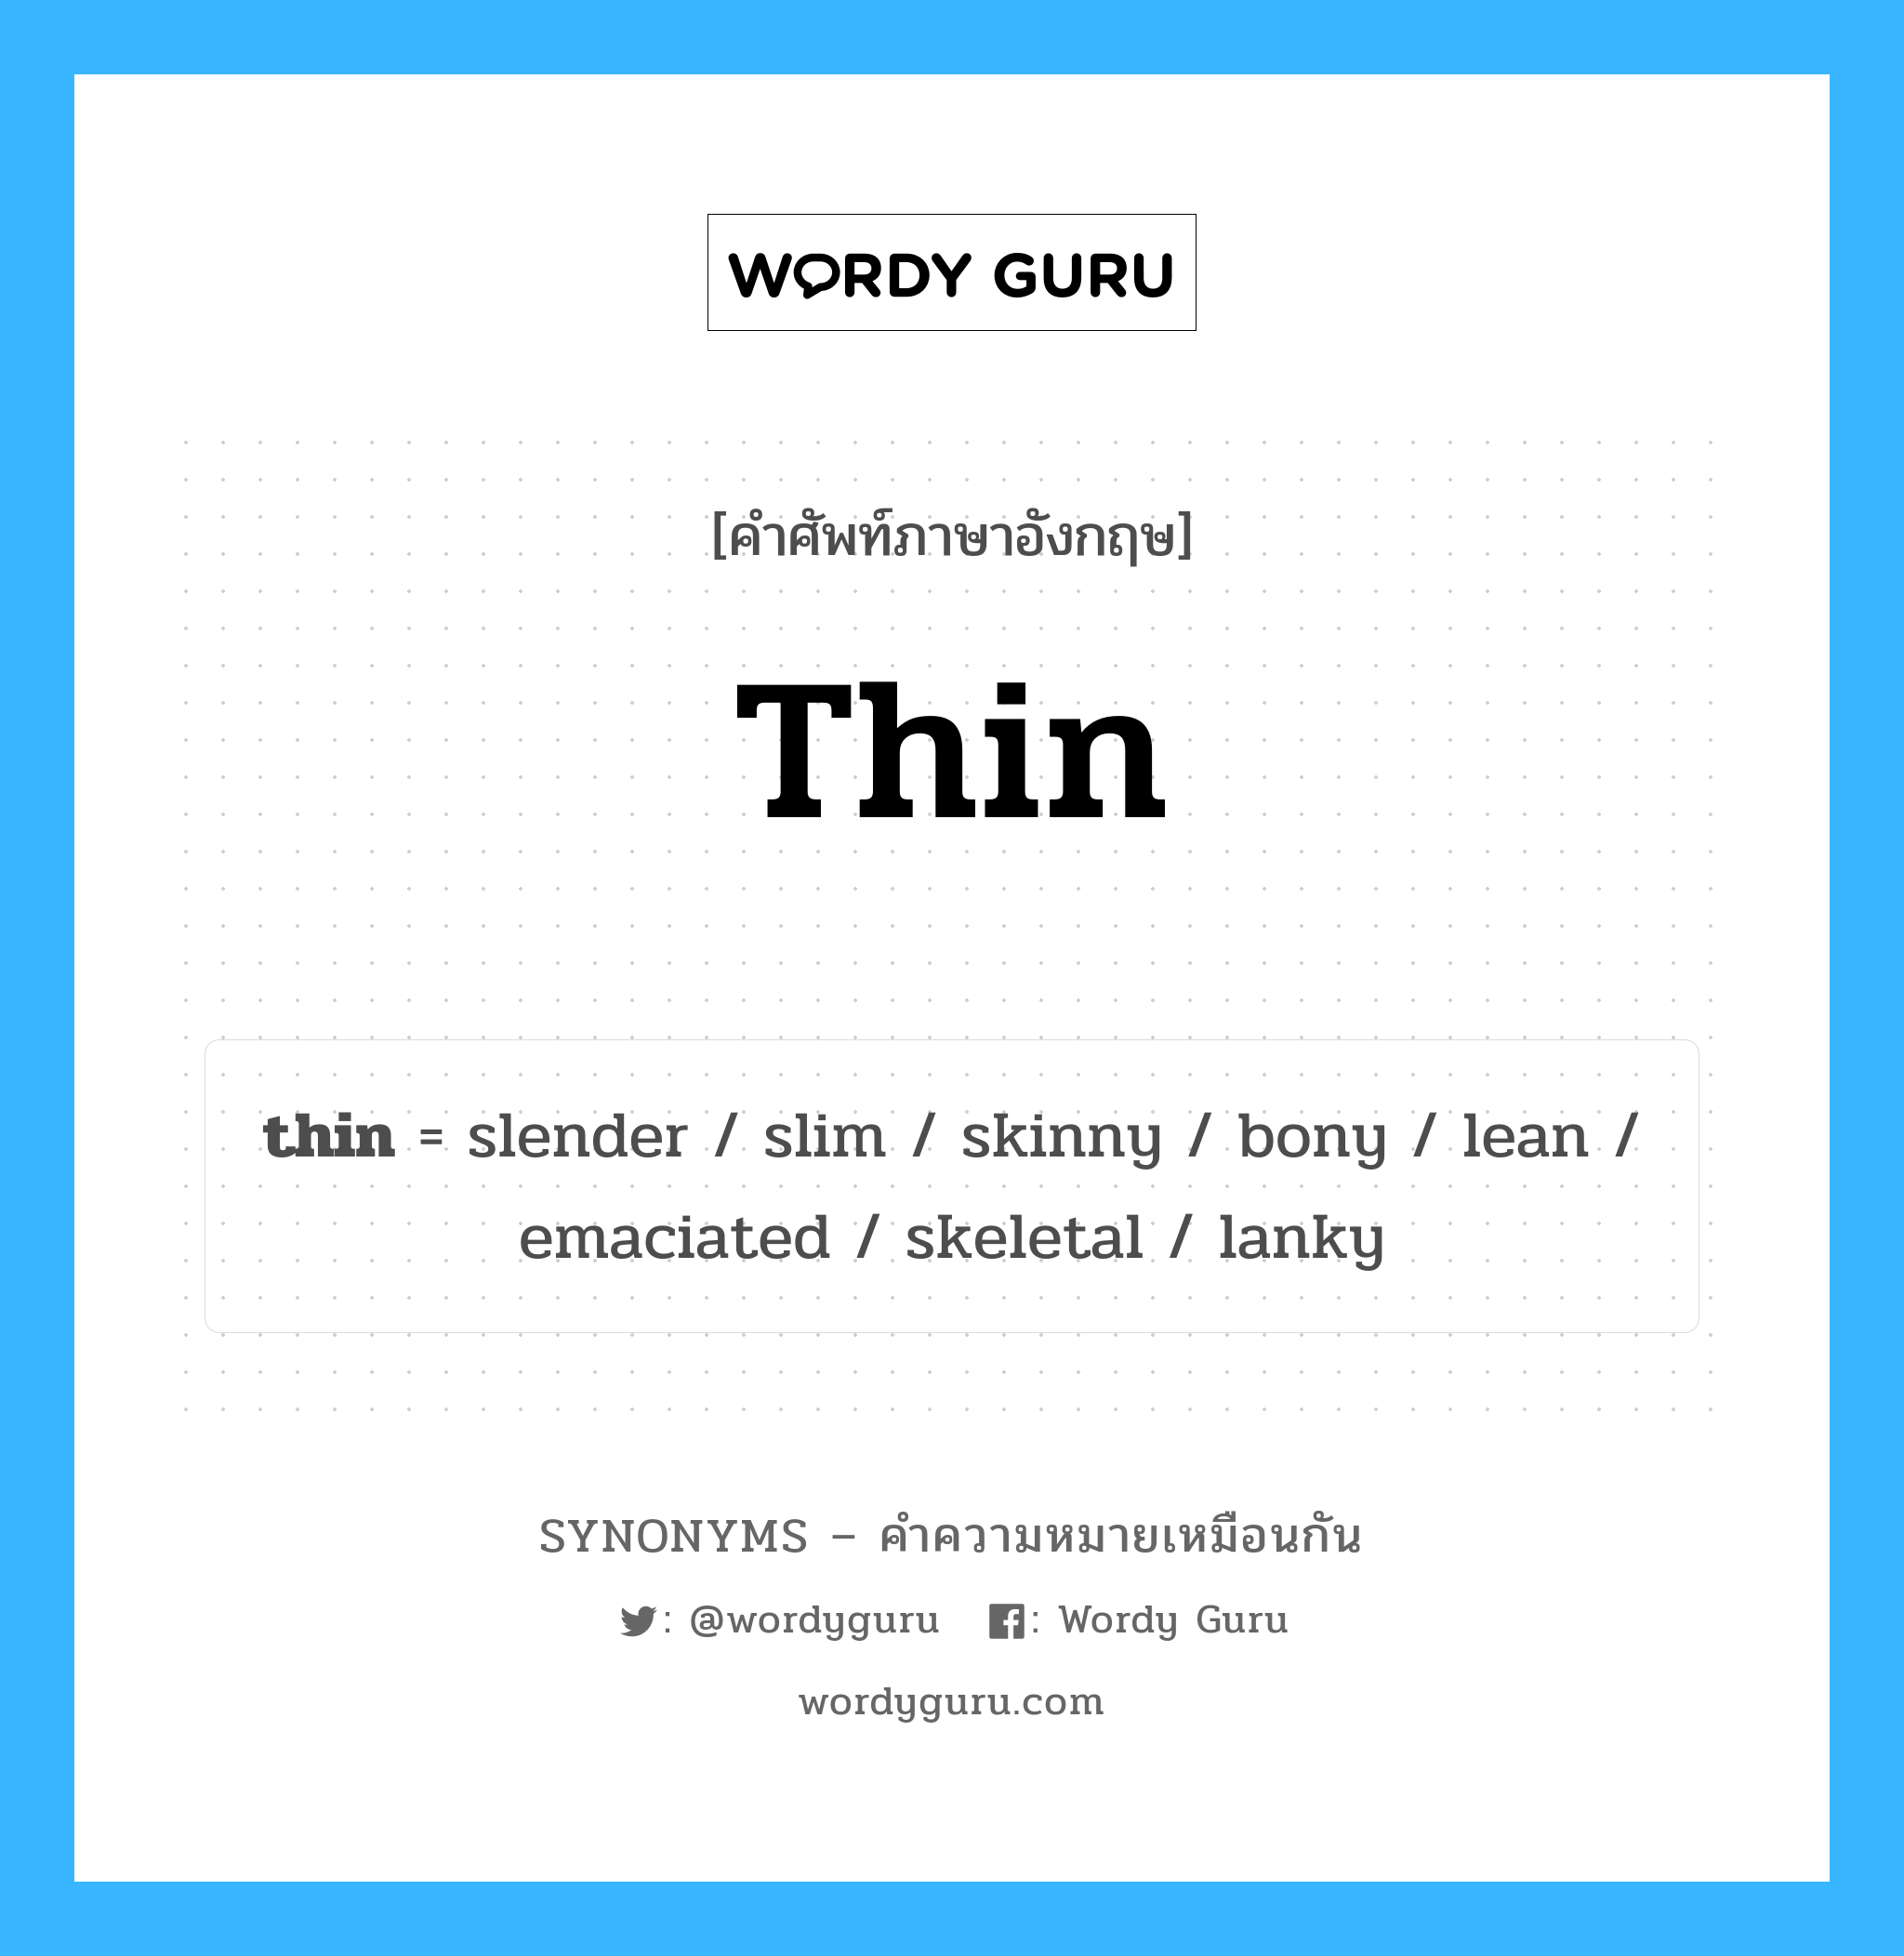 thin เป็นหนึ่งใน slim และมีคำอื่น ๆ อีกดังนี้, คำศัพท์ภาษาอังกฤษ thin ความหมายคล้ายกันกับ slim แปลว่า บาง หมวด slim